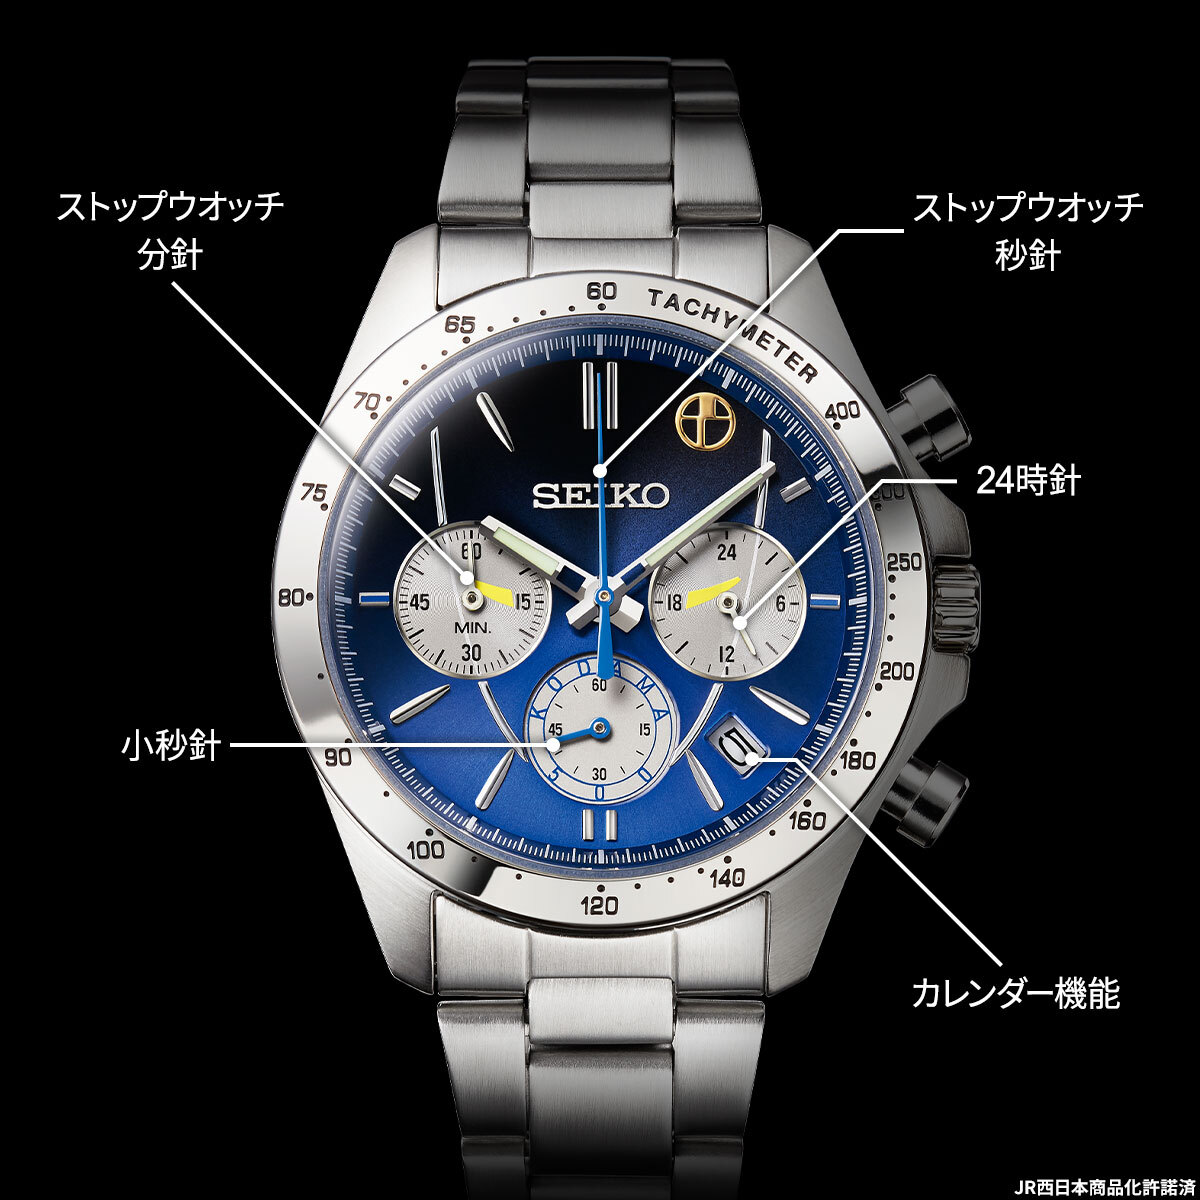 セイコー 500系こだまウオッチ 500系新幹線 25周年記念モデル - 腕時計 ...